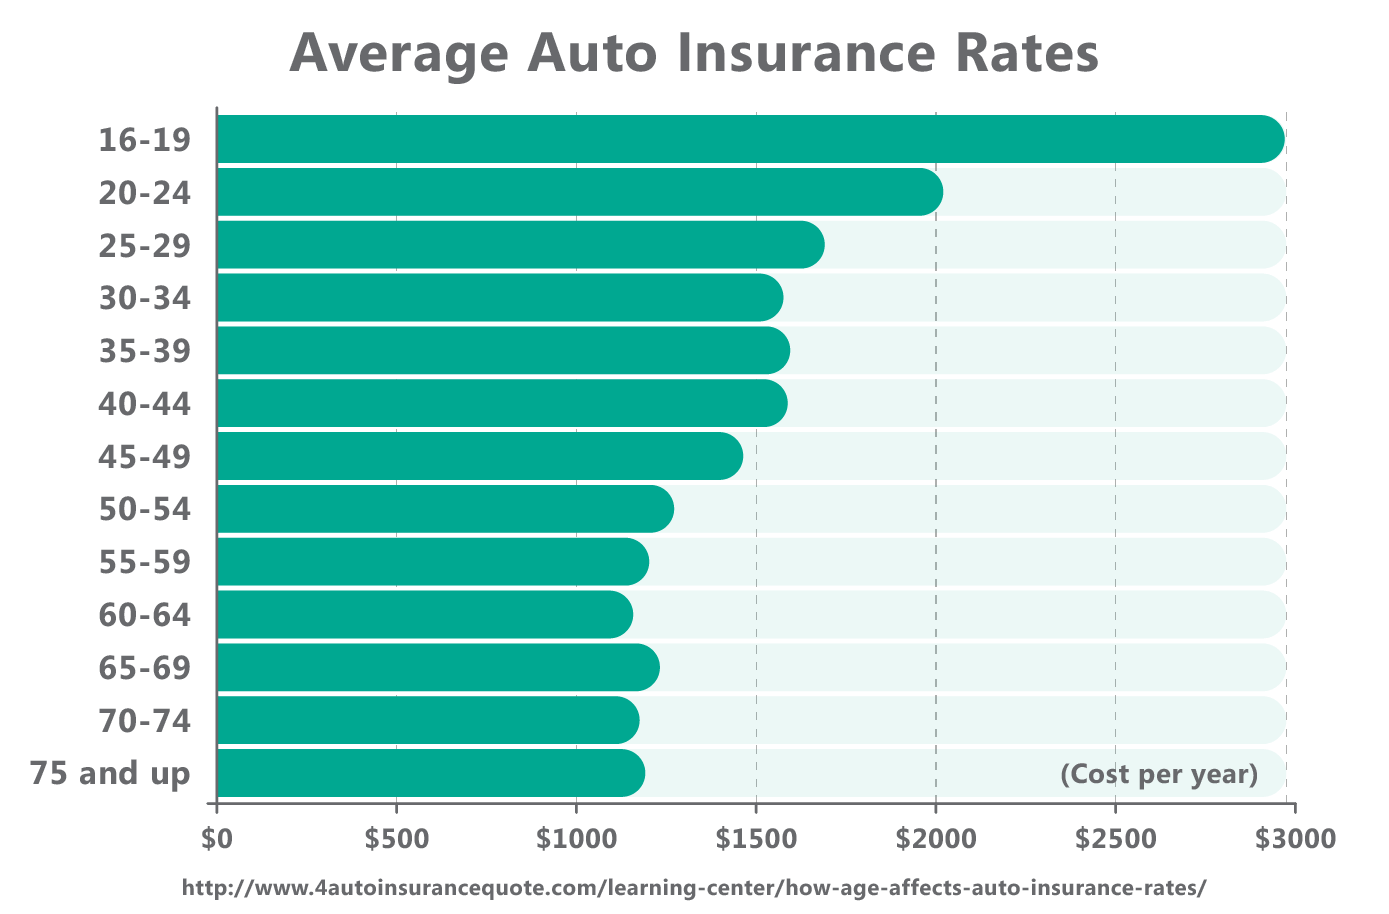 auto insurance price comparison